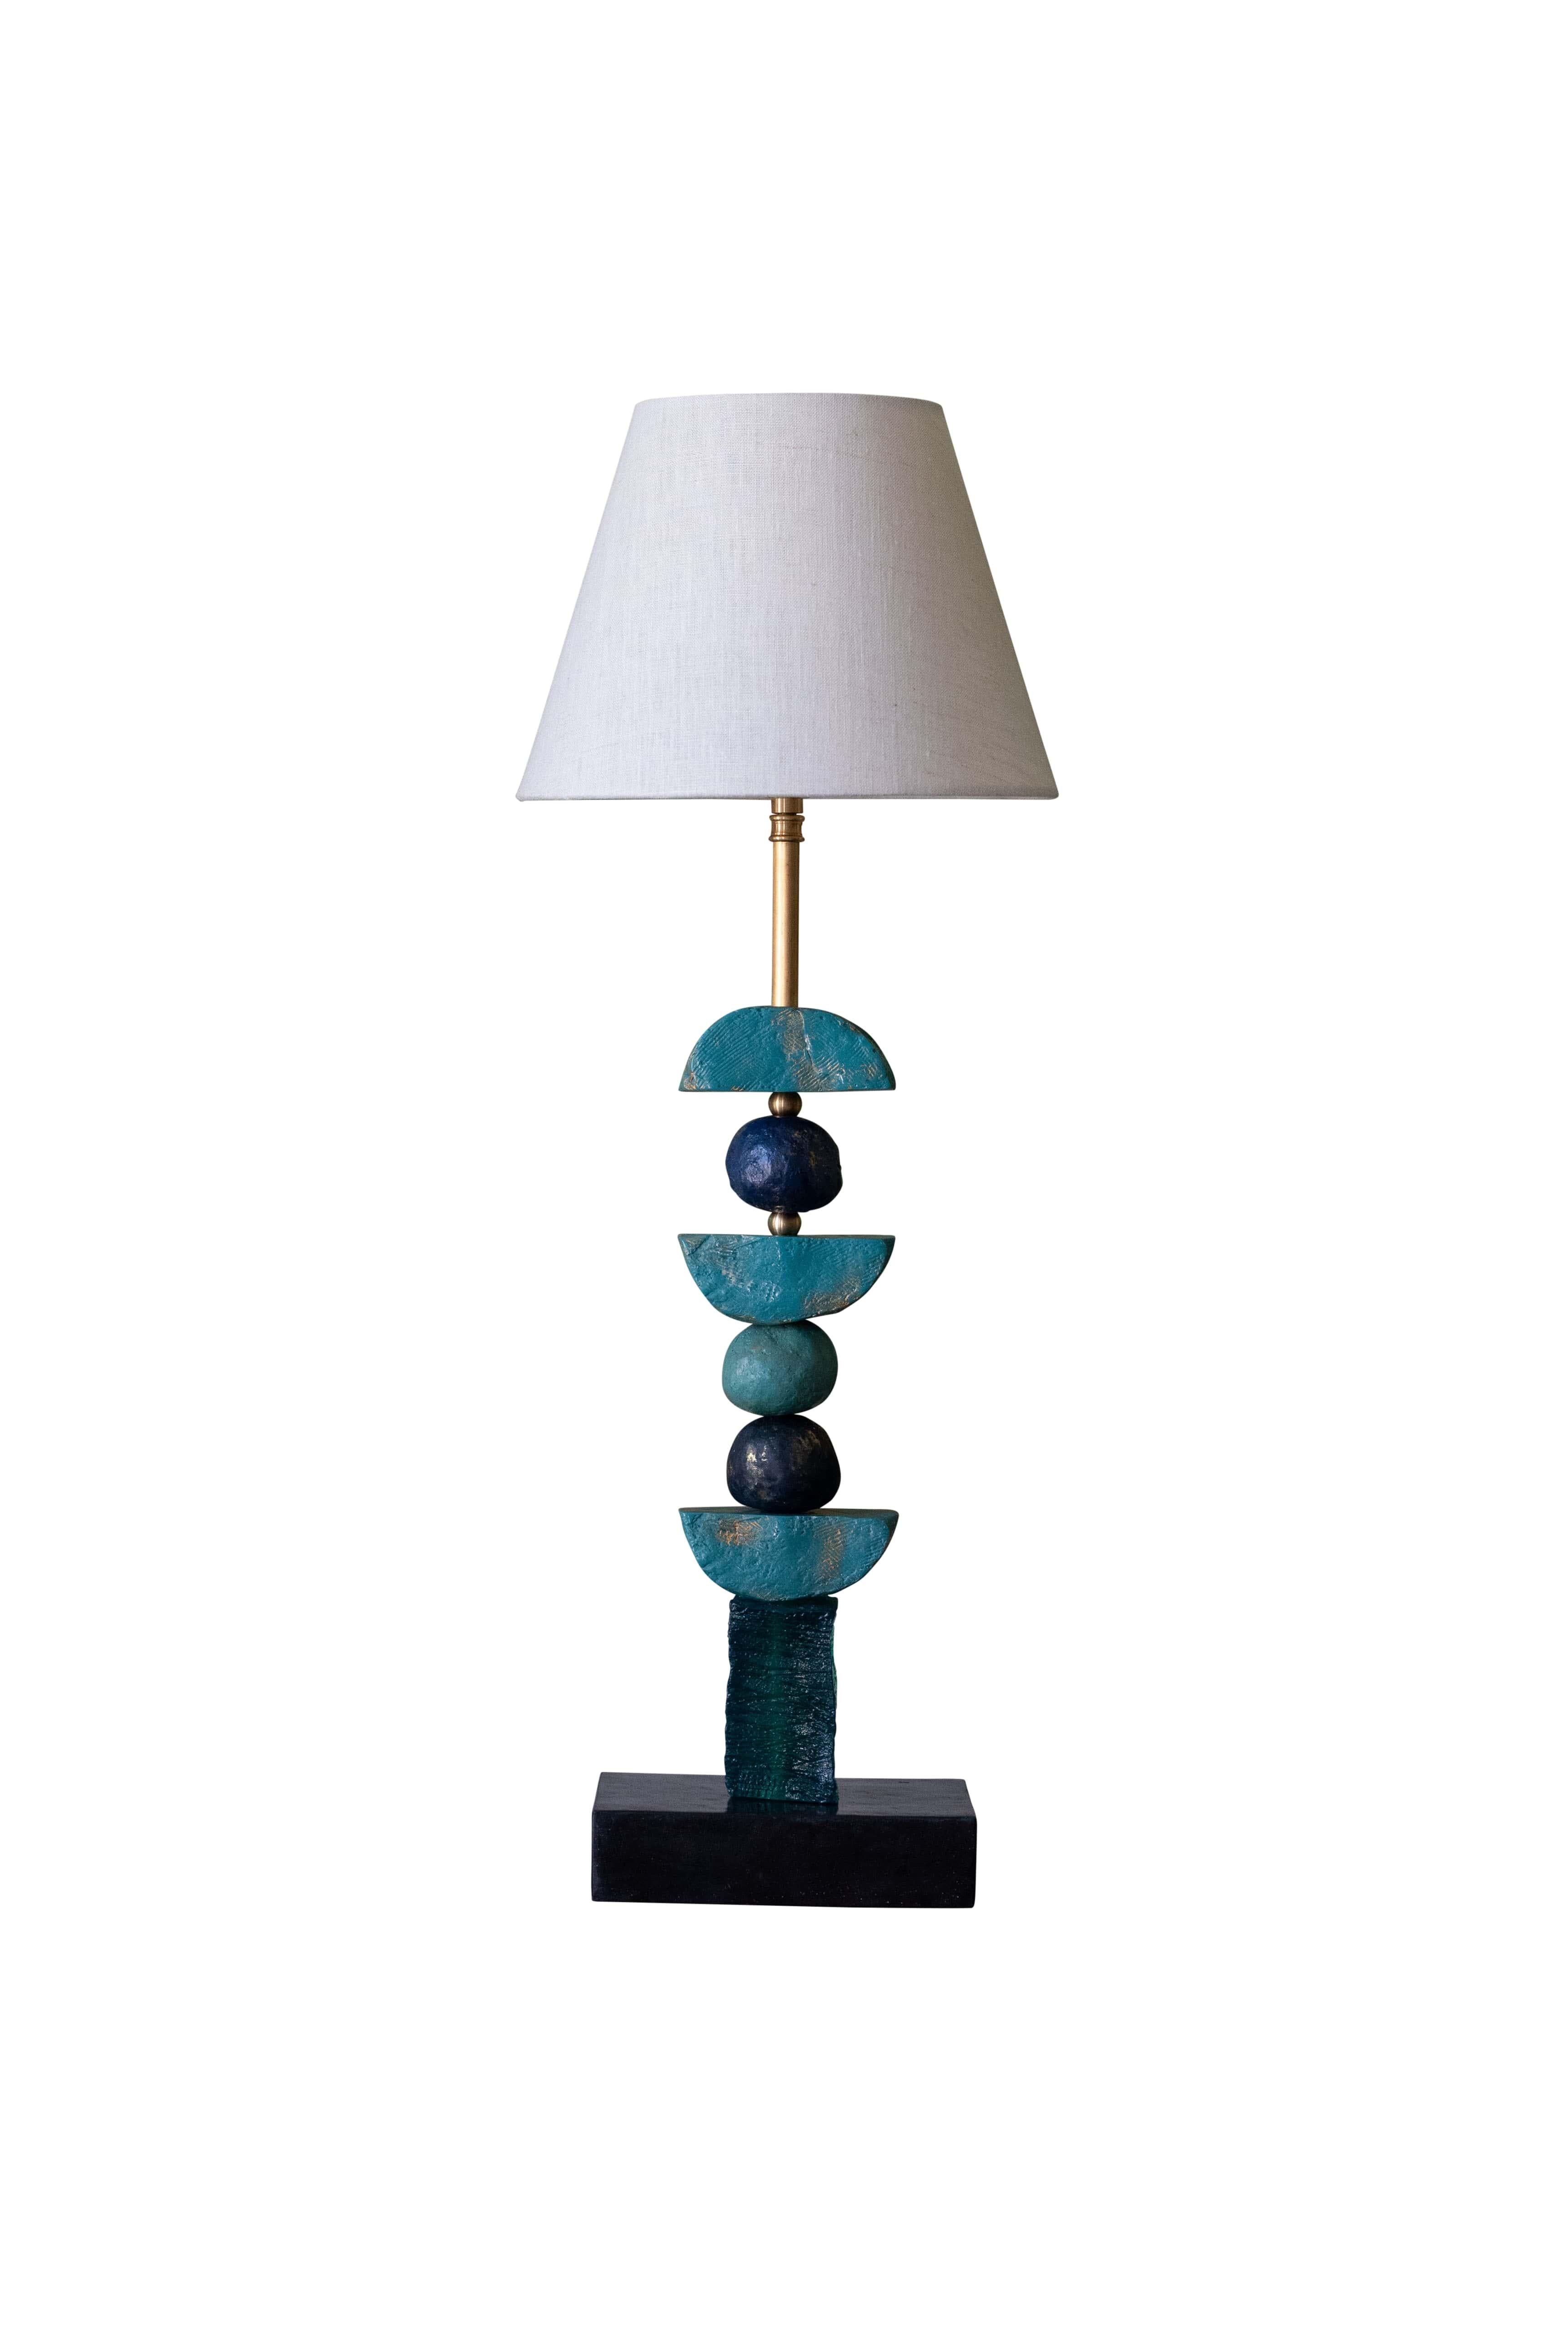 Cette lampe de table contemporaine de Margit Wittig repose sur une base rectangulaire en ardoise et comprend des sphères coulées à la main en bleu et des demi-lunes en sarcelle. Les éléments contemporains sculptés, avec leur texture organique, sont